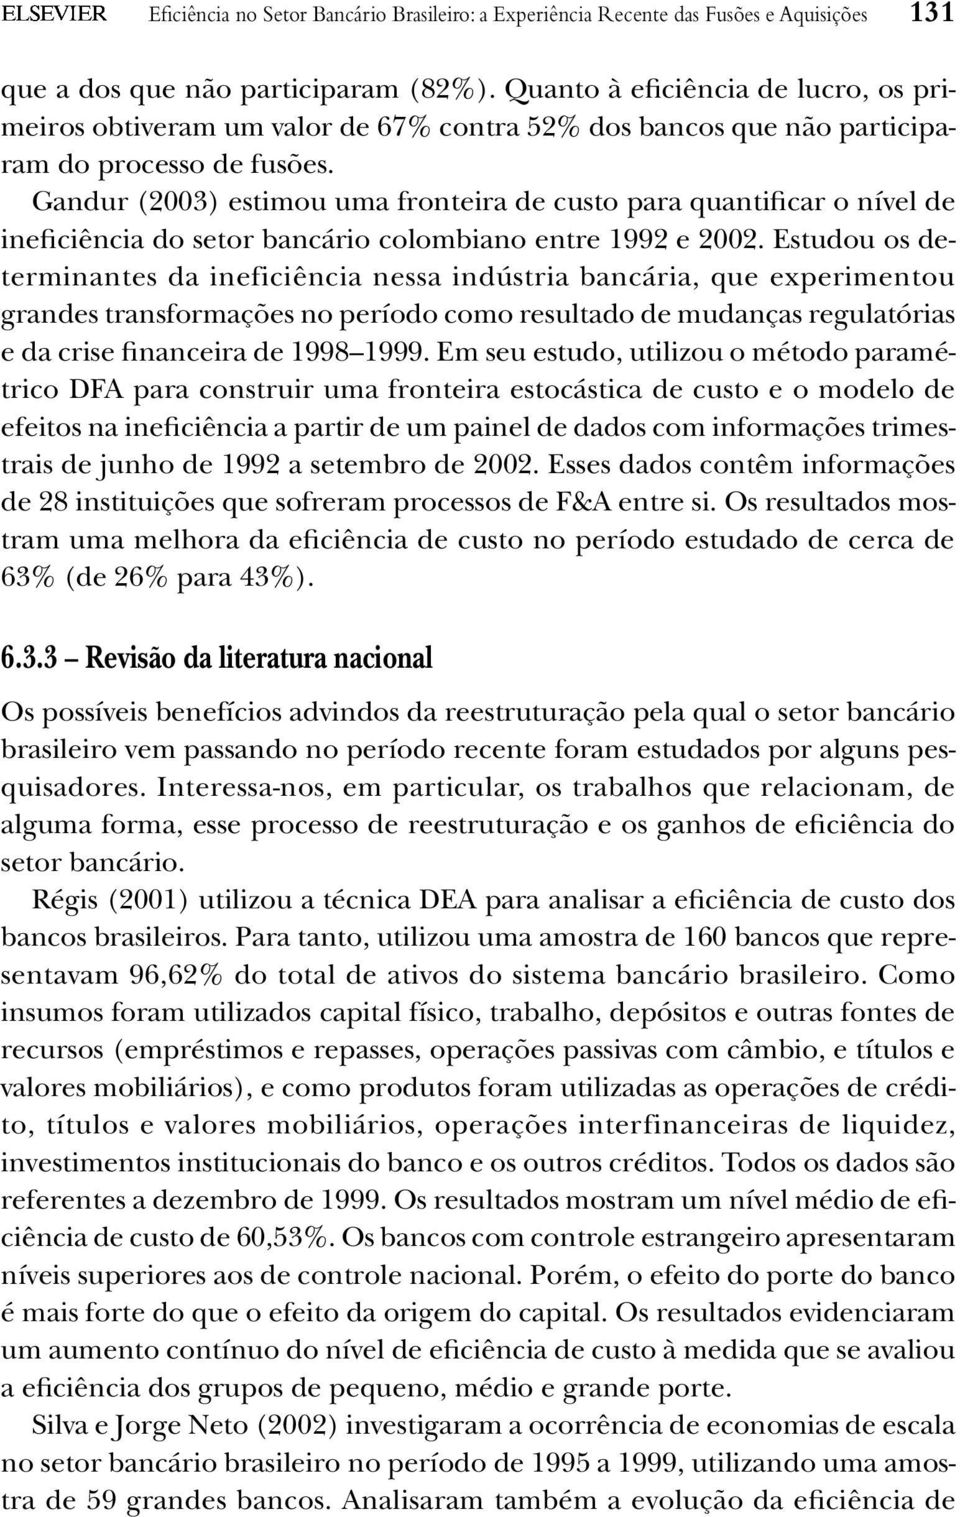 Gandur (2003) estimou uma fronteira de custo para quantificar o nível de ineficiência do setor bancário colombiano entre 1992 e 2002.